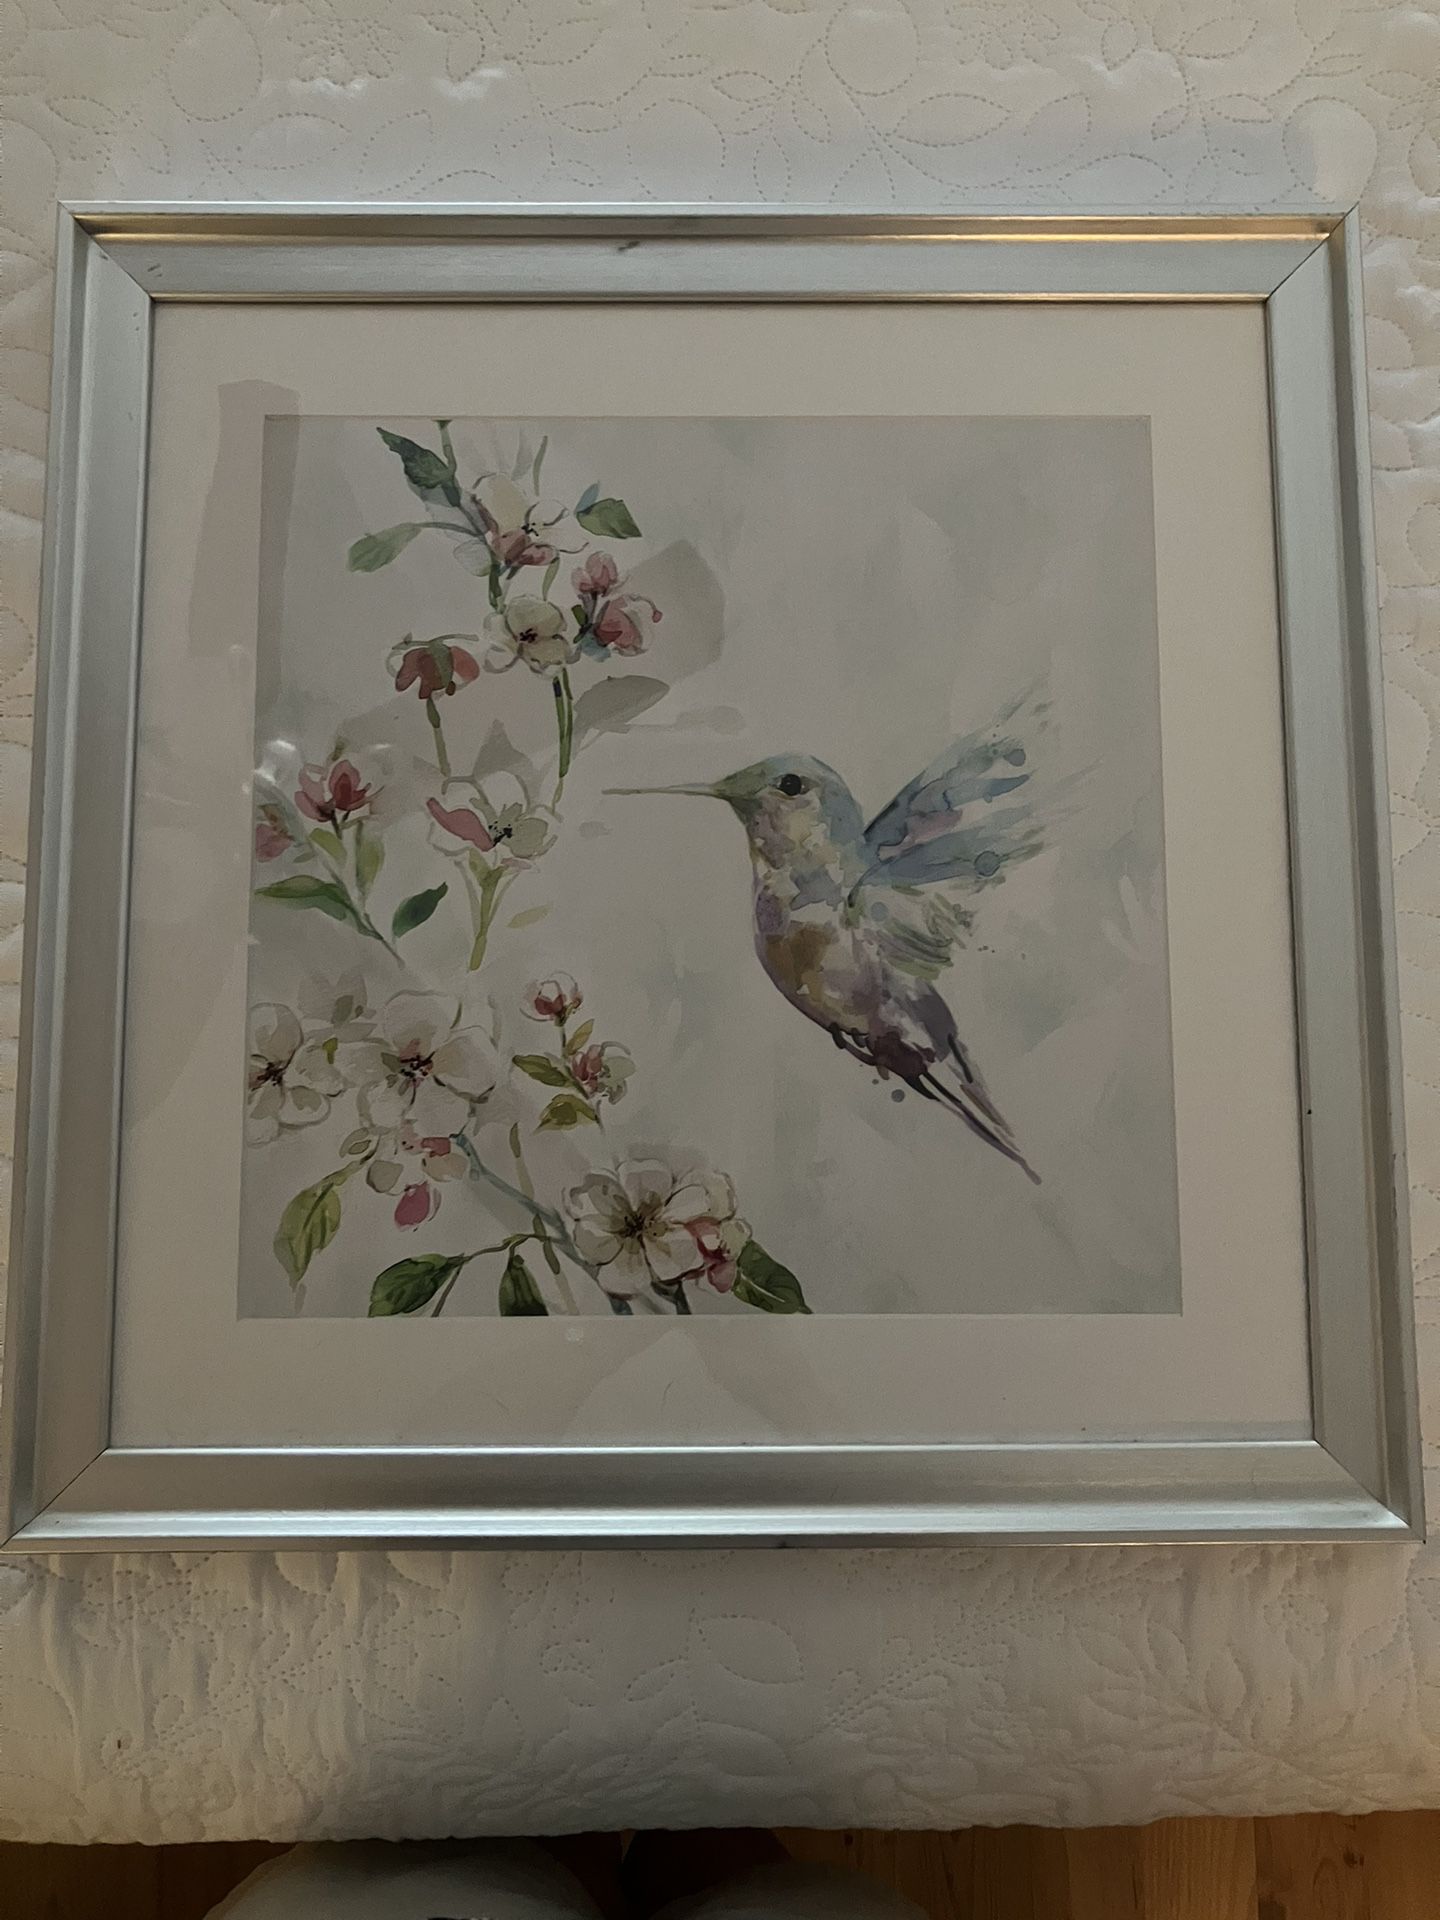 Silver Framed Art Of A Hummingbird